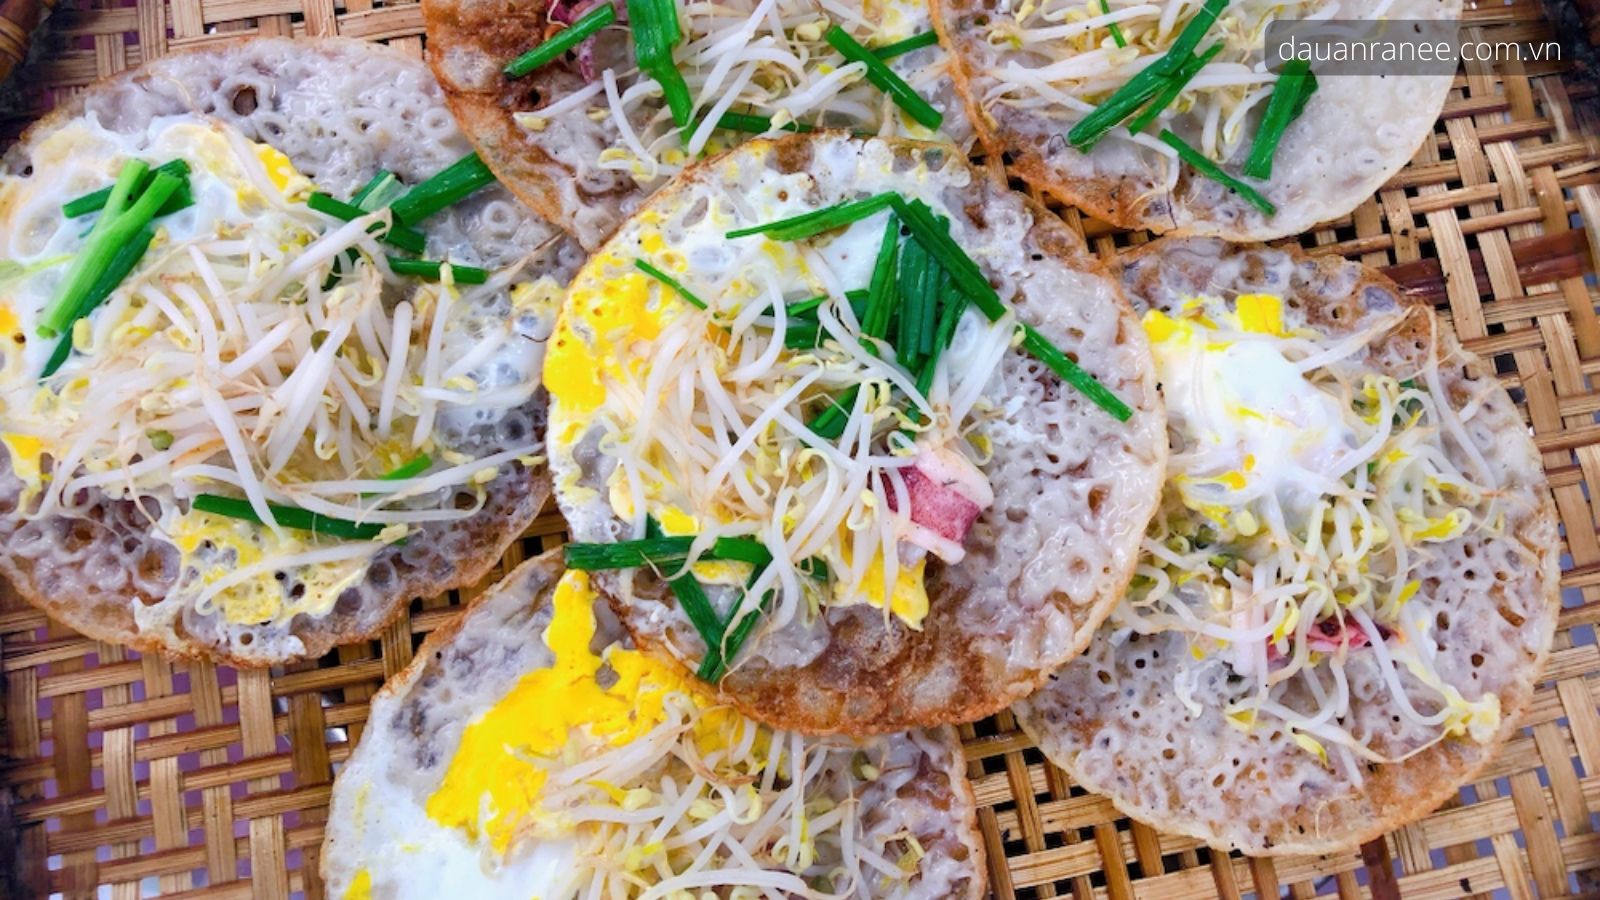 Bánh xèo Phú Yên - Thưởng thức món bánh ngon ăn kèm với rau sống.